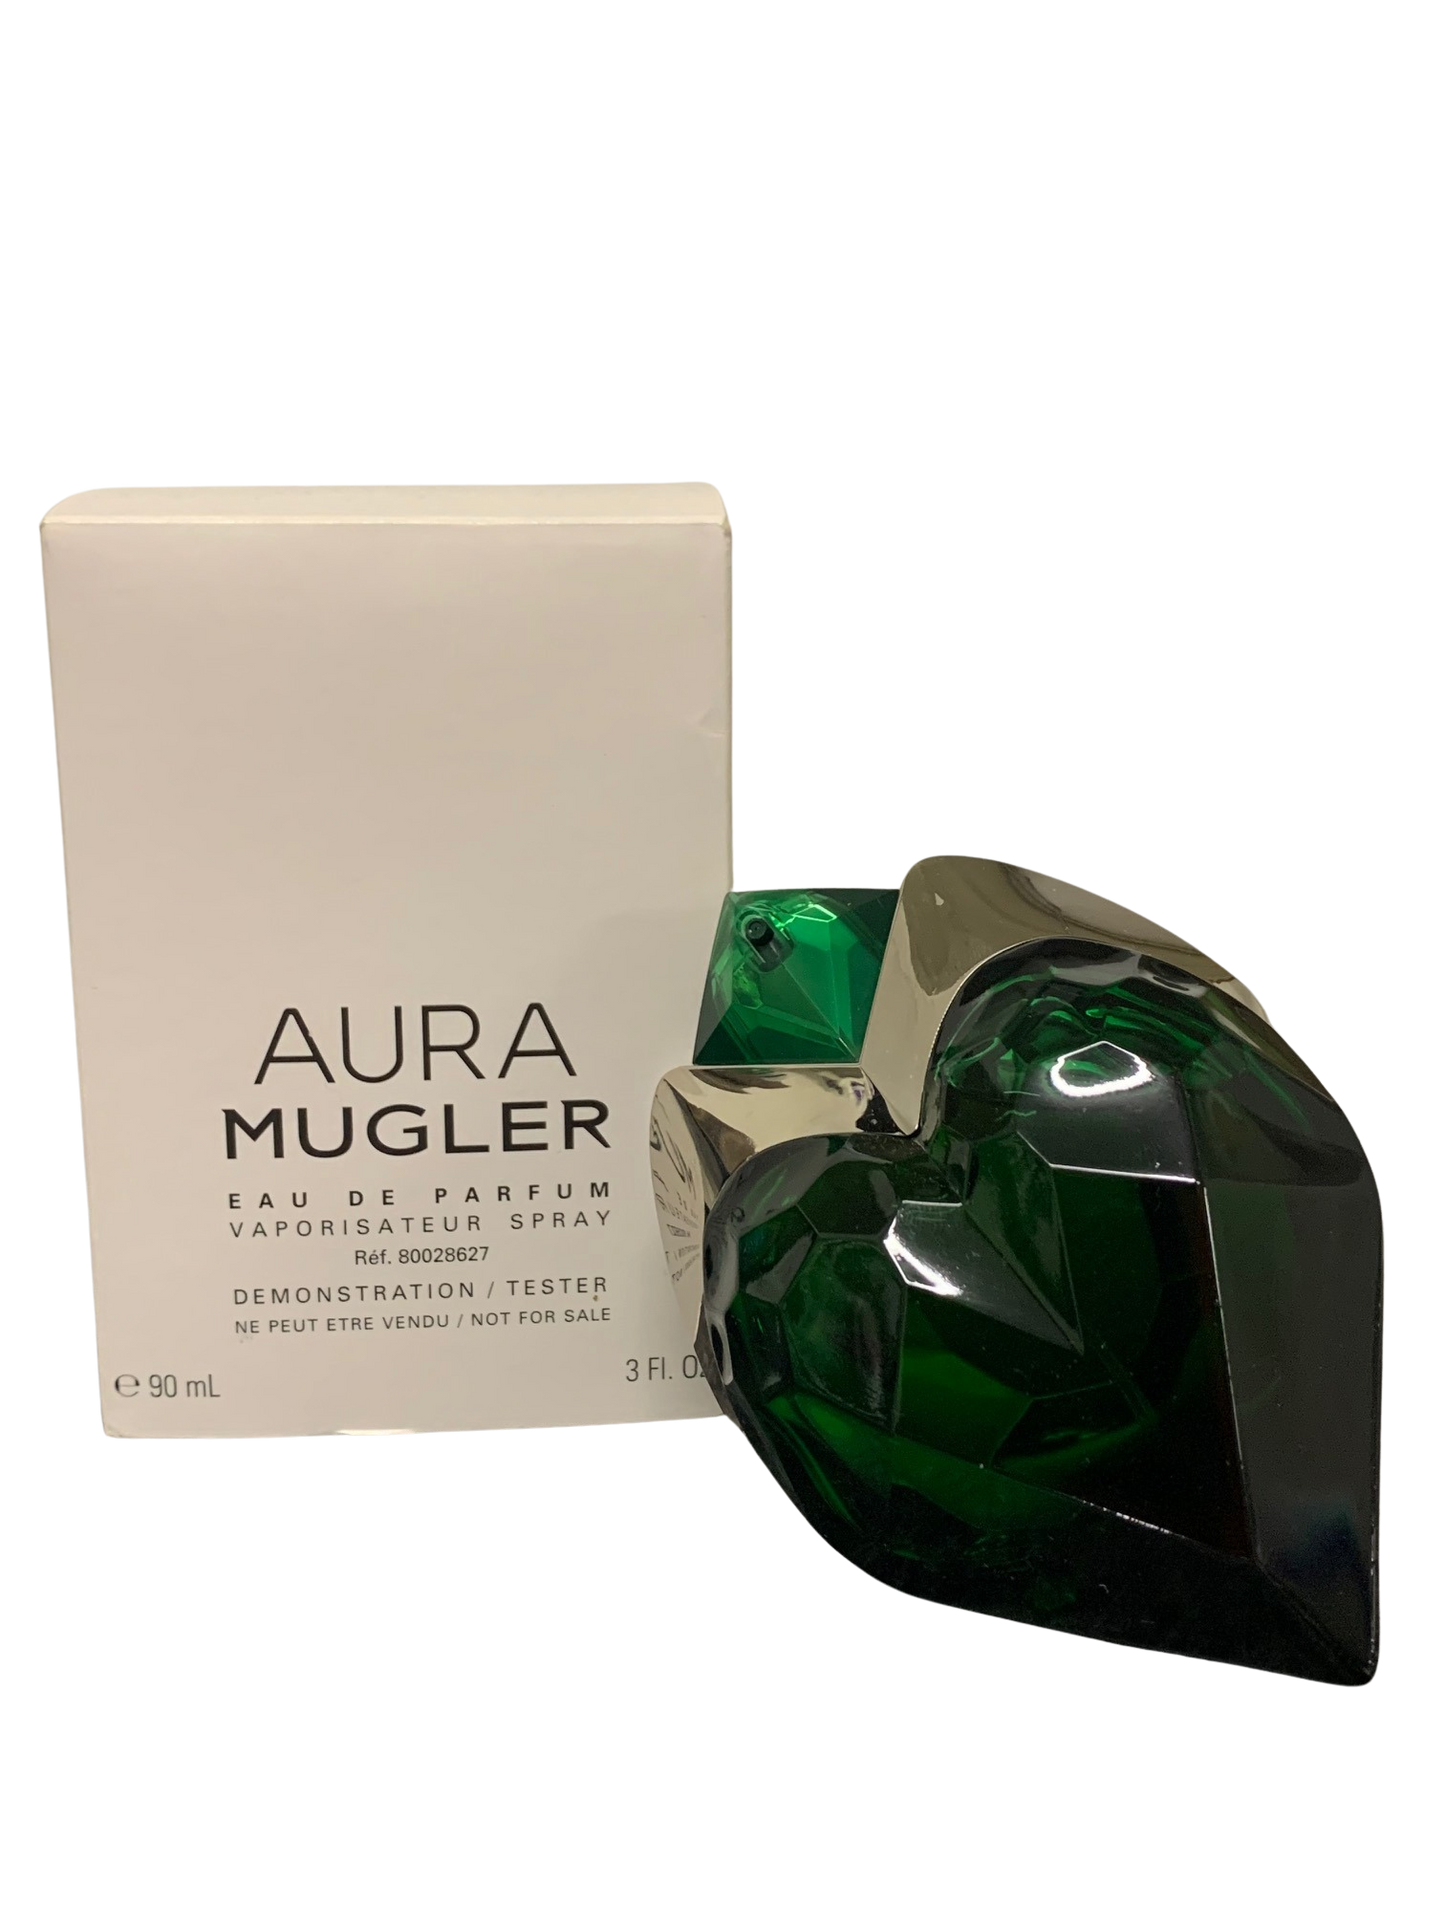 Aura MUGLER eau de parfum 100ml